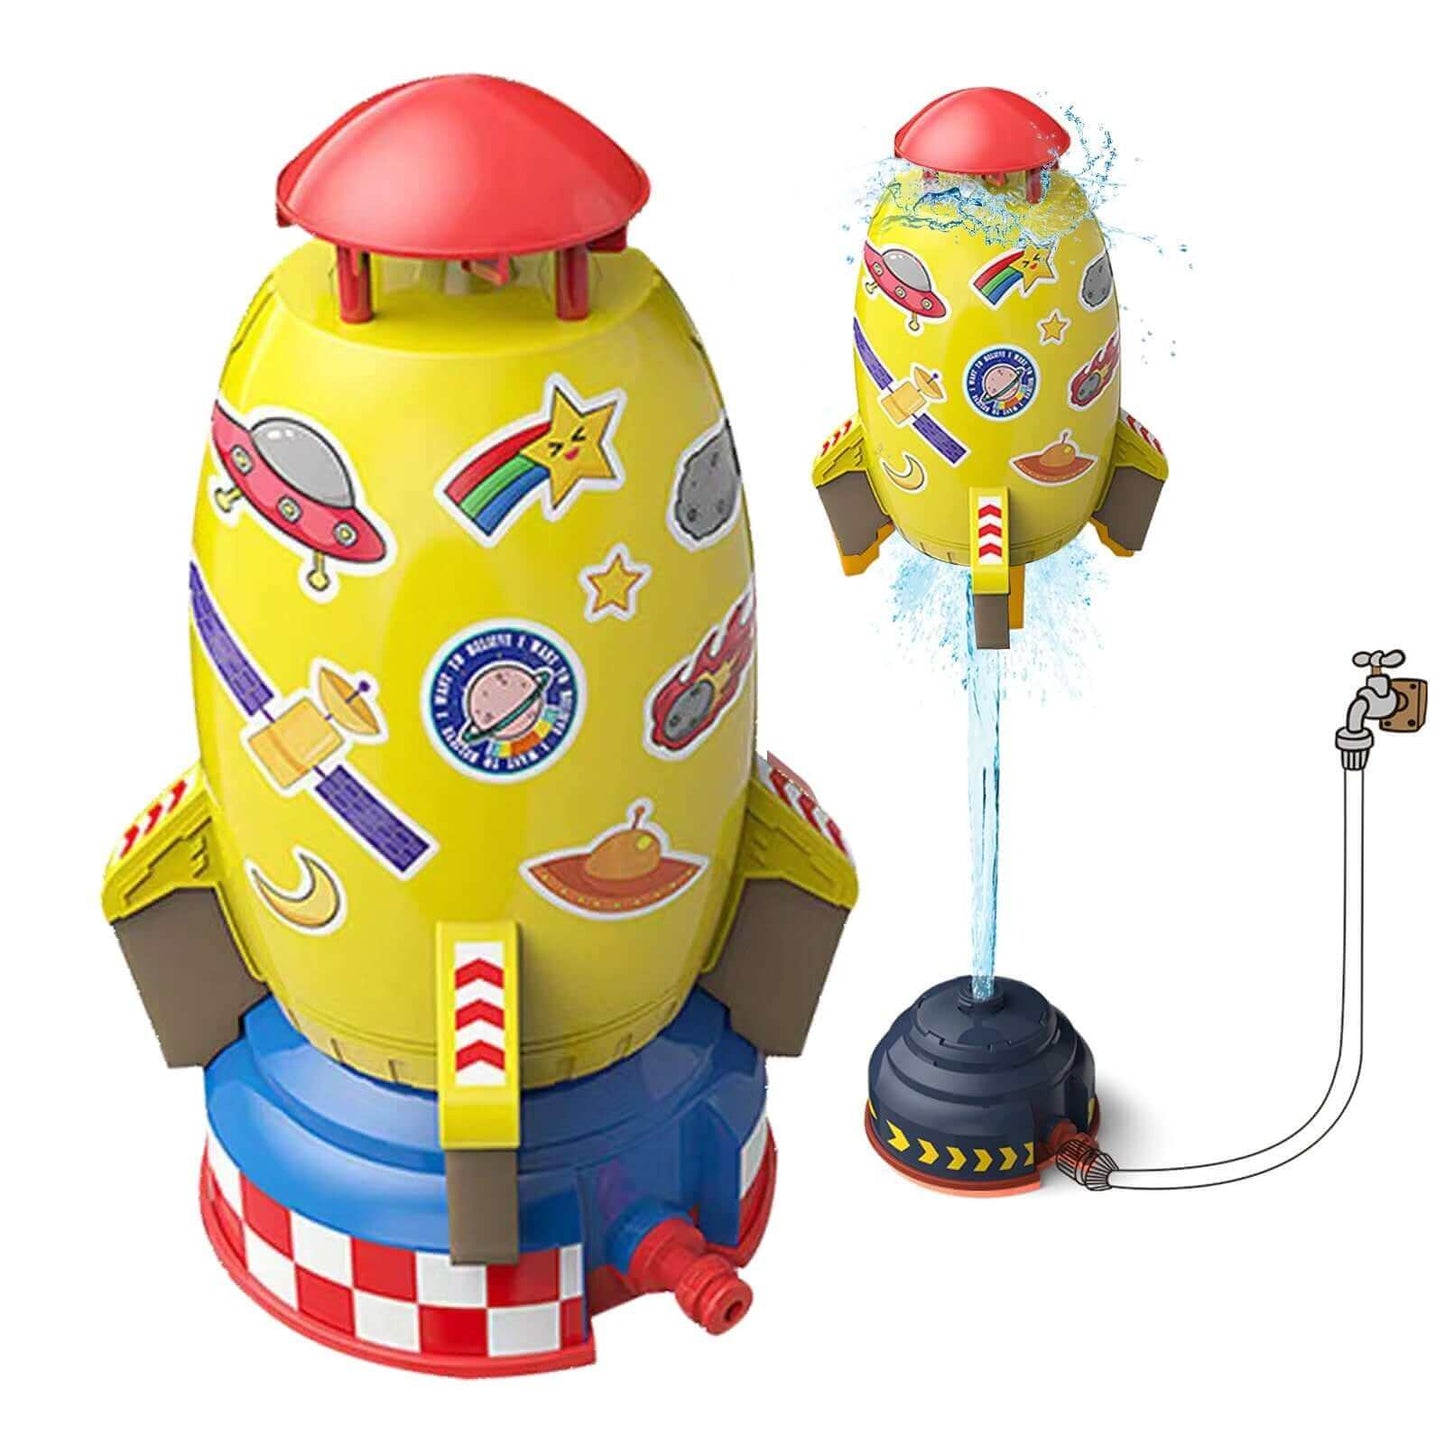 Açık roket başlatıcısı oyuncak-bahçe eğlence ve interaktif oyun için su powered sprinkler-çocuk çim su spreyi roket